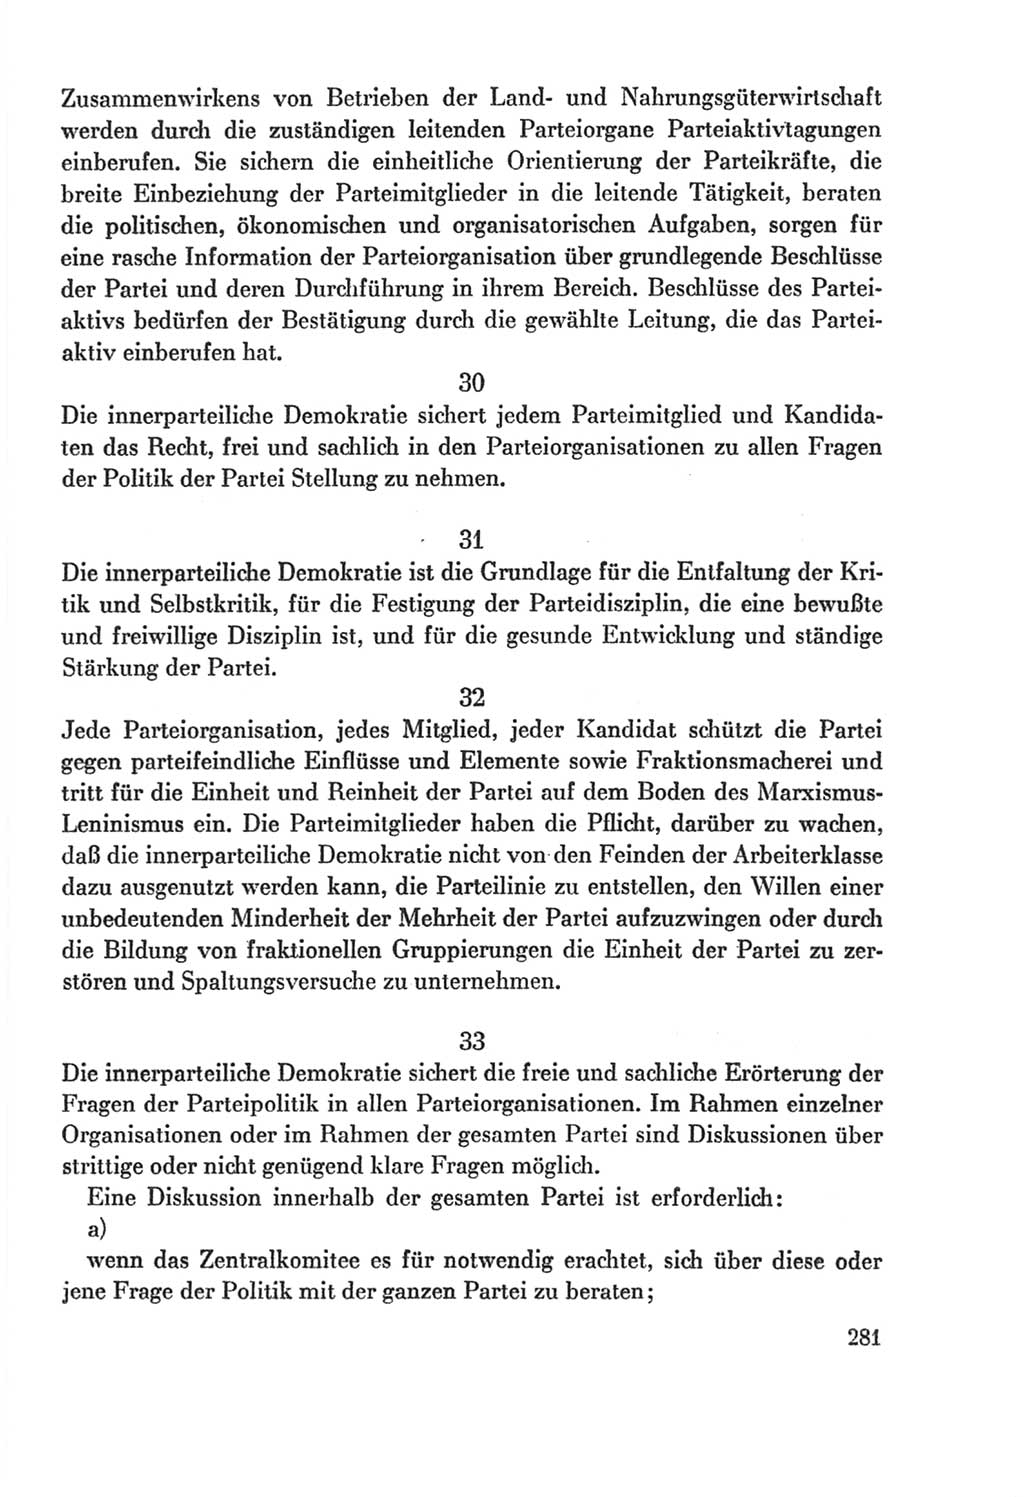 Protokoll der Verhandlungen des Ⅸ. Parteitages der Sozialistischen Einheitspartei Deutschlands (SED) [Deutsche Demokratische Republik (DDR)] 1976, Band 2, Seite 281 (Prot. Verh. Ⅸ. PT SED DDR 1976, Bd. 2, S. 281)